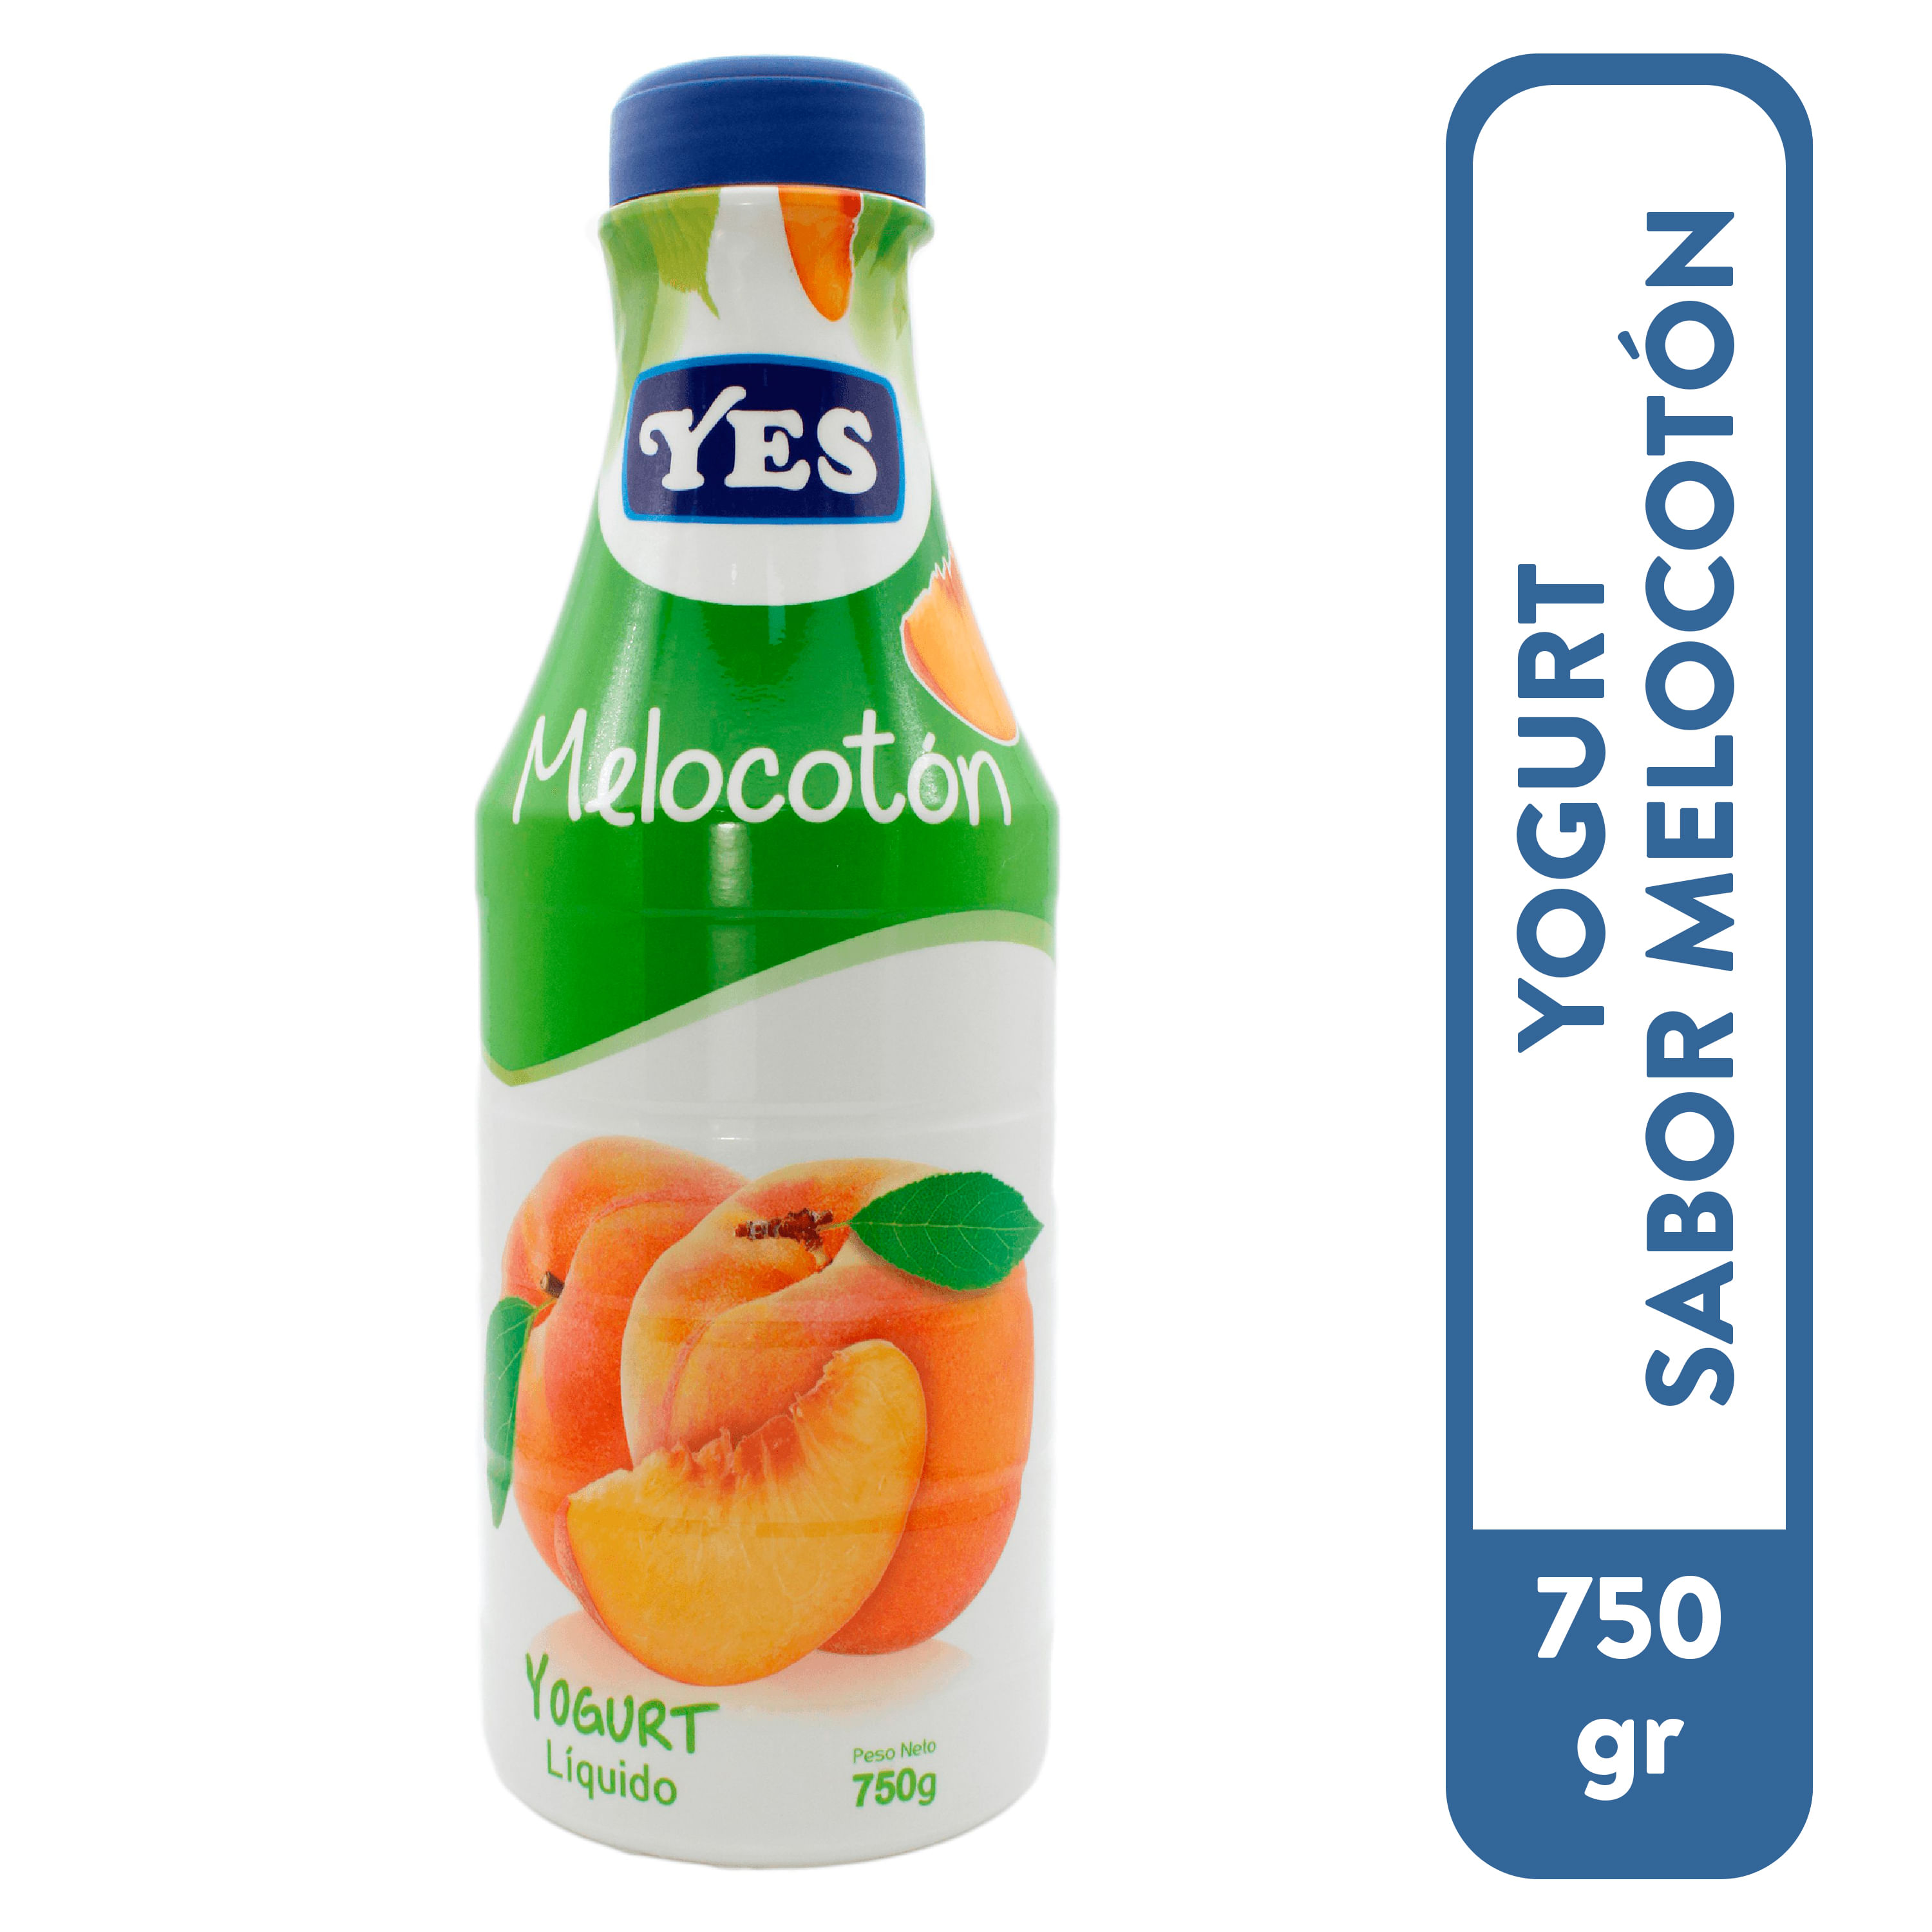 Simeo 8 Botes Yogurt 20w - Yva640 con Ofertas en Carrefour